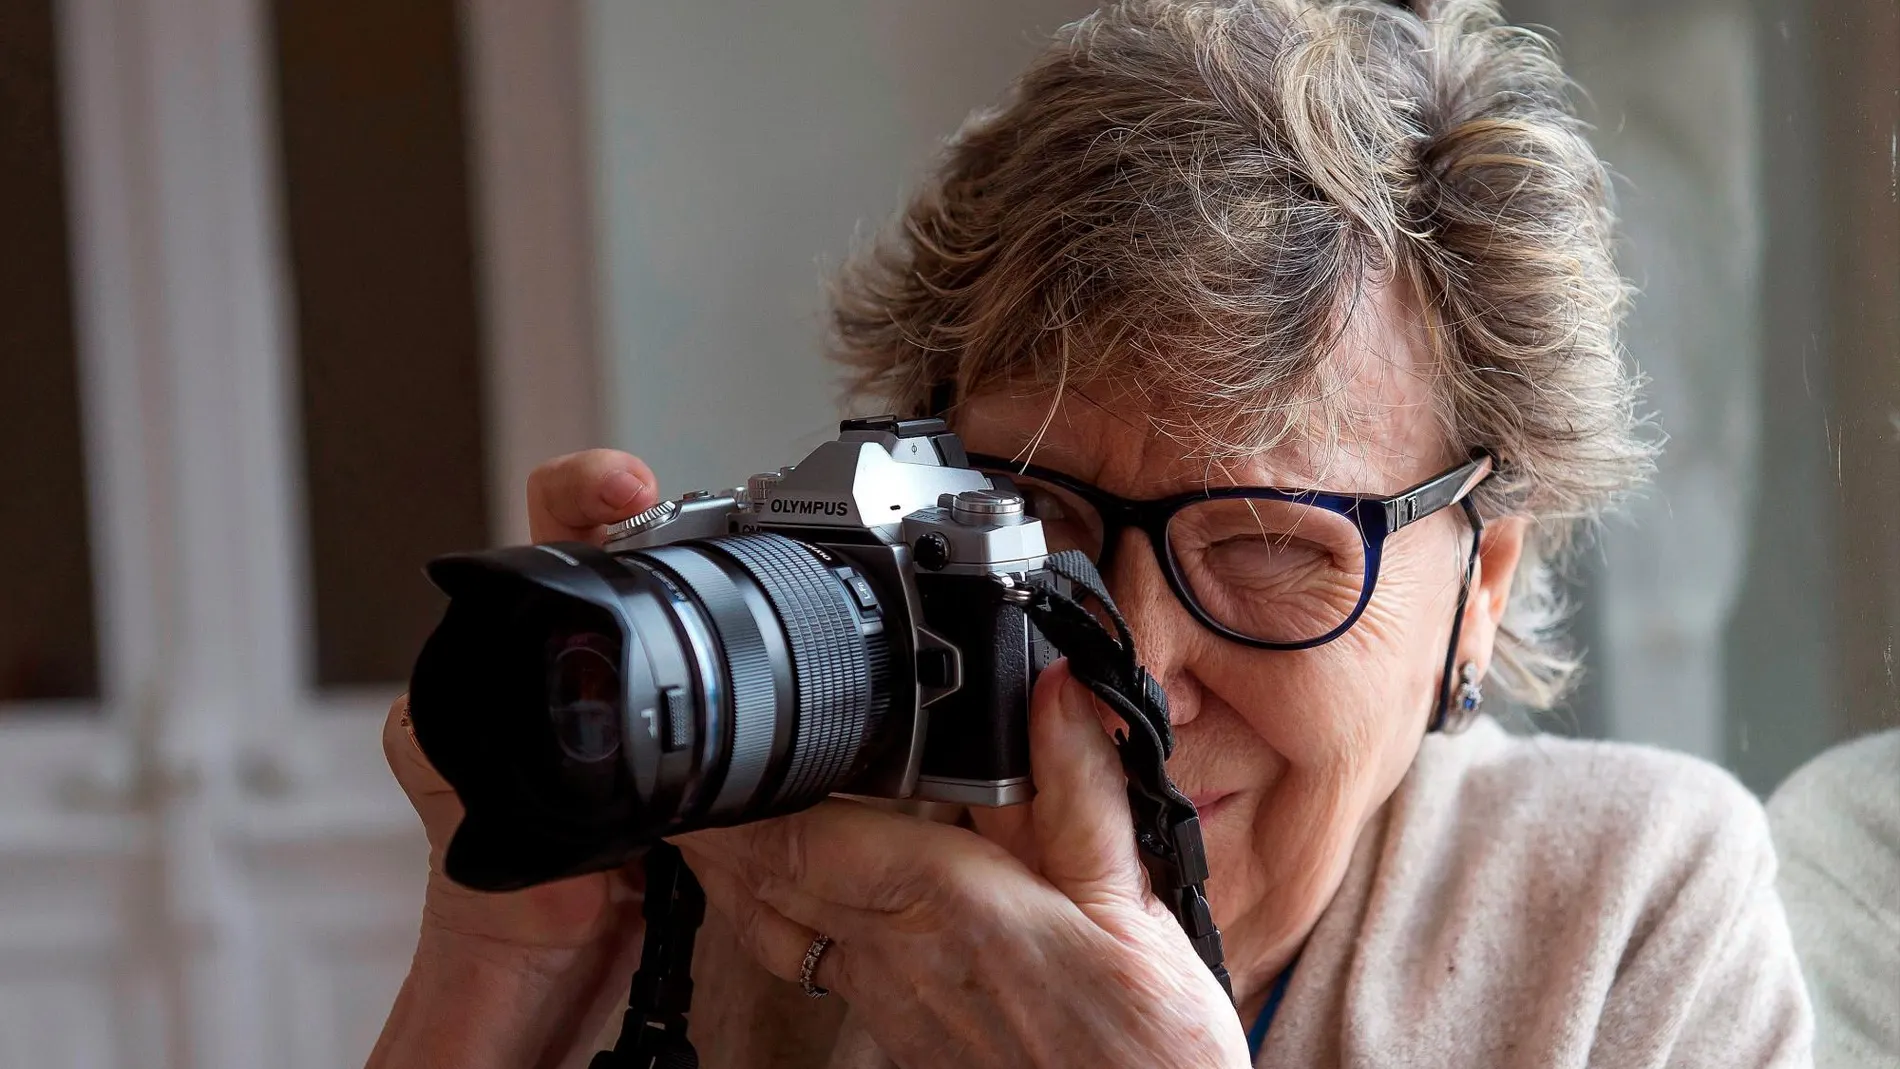 Fallece Joana Biarnés a los 83 años de edad, una de las fotoperiodistas pioneras en nuestro país / EFE